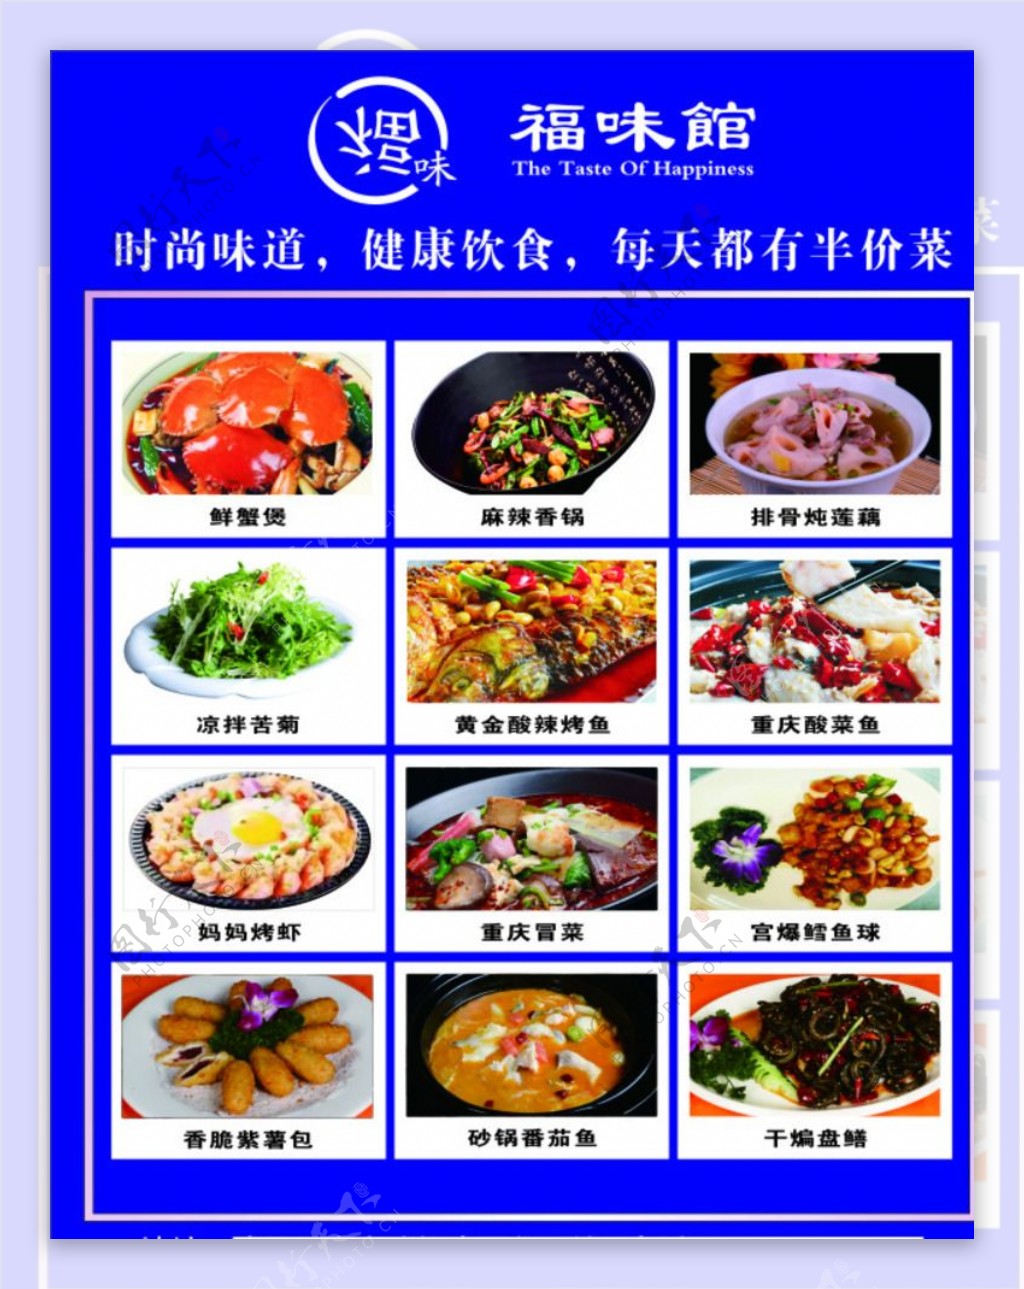 福味馆LOGO菜品宣传海报